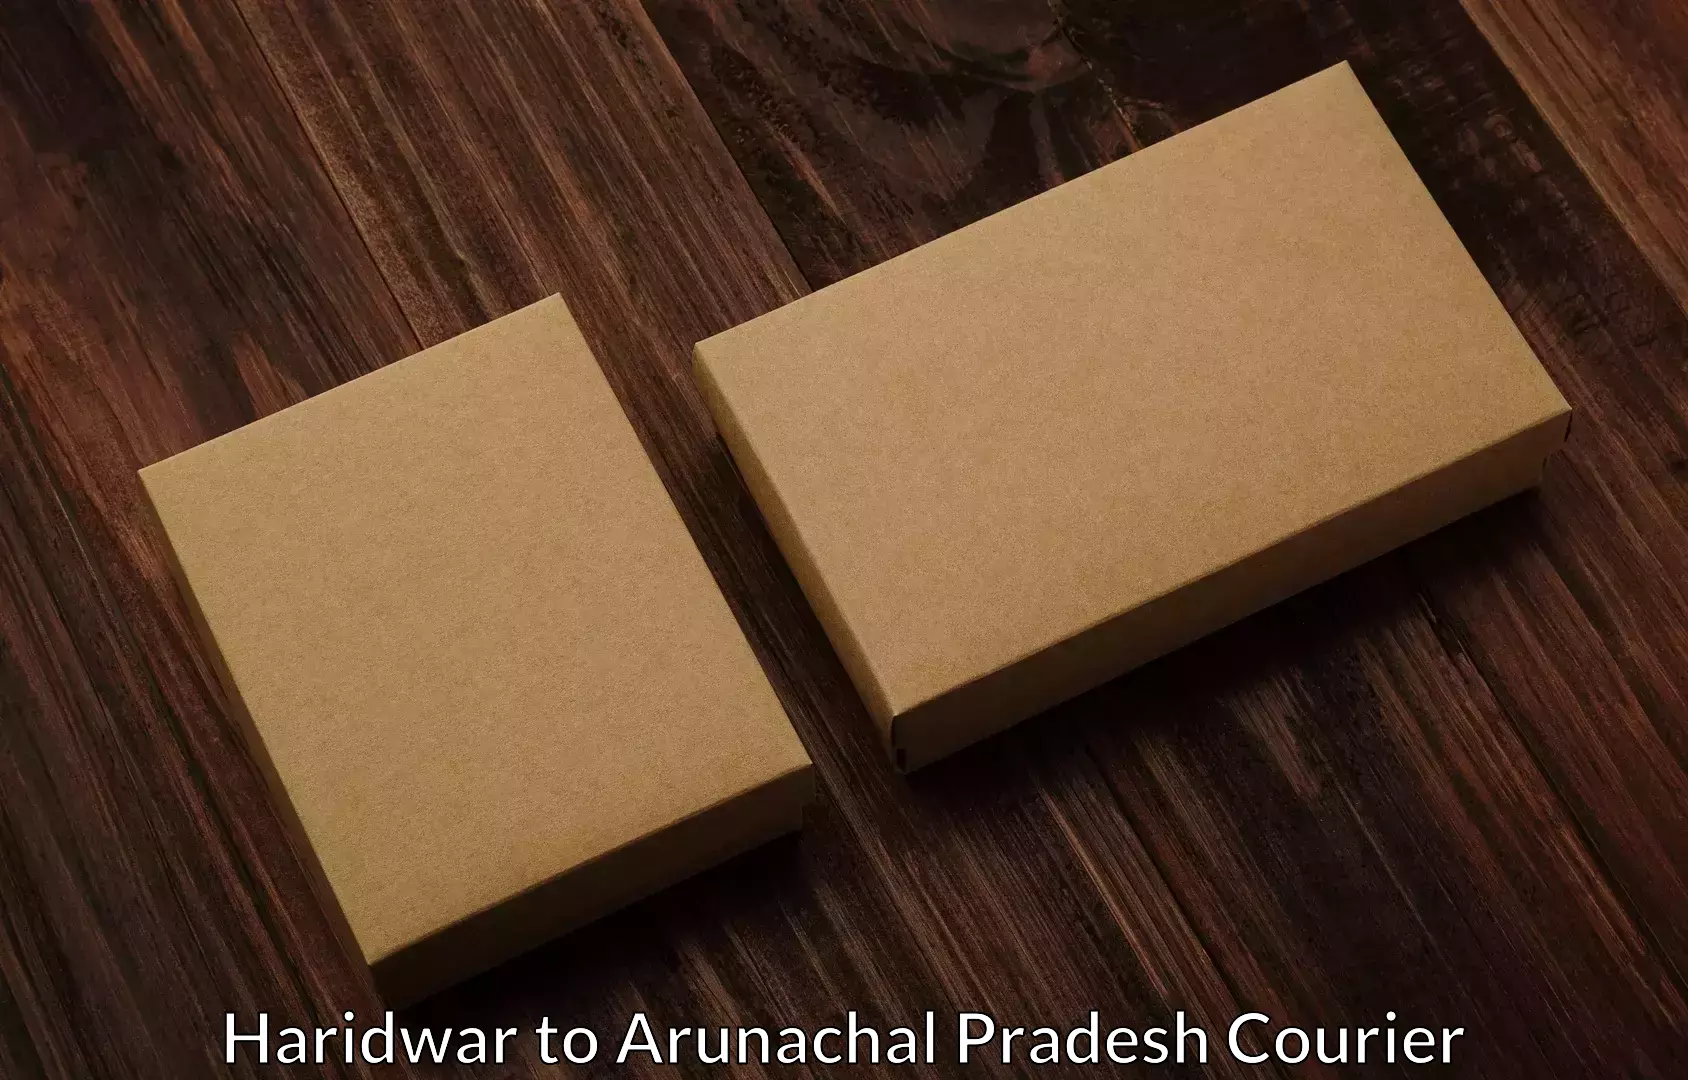 Home moving specialists Haridwar to Arunachal Pradesh